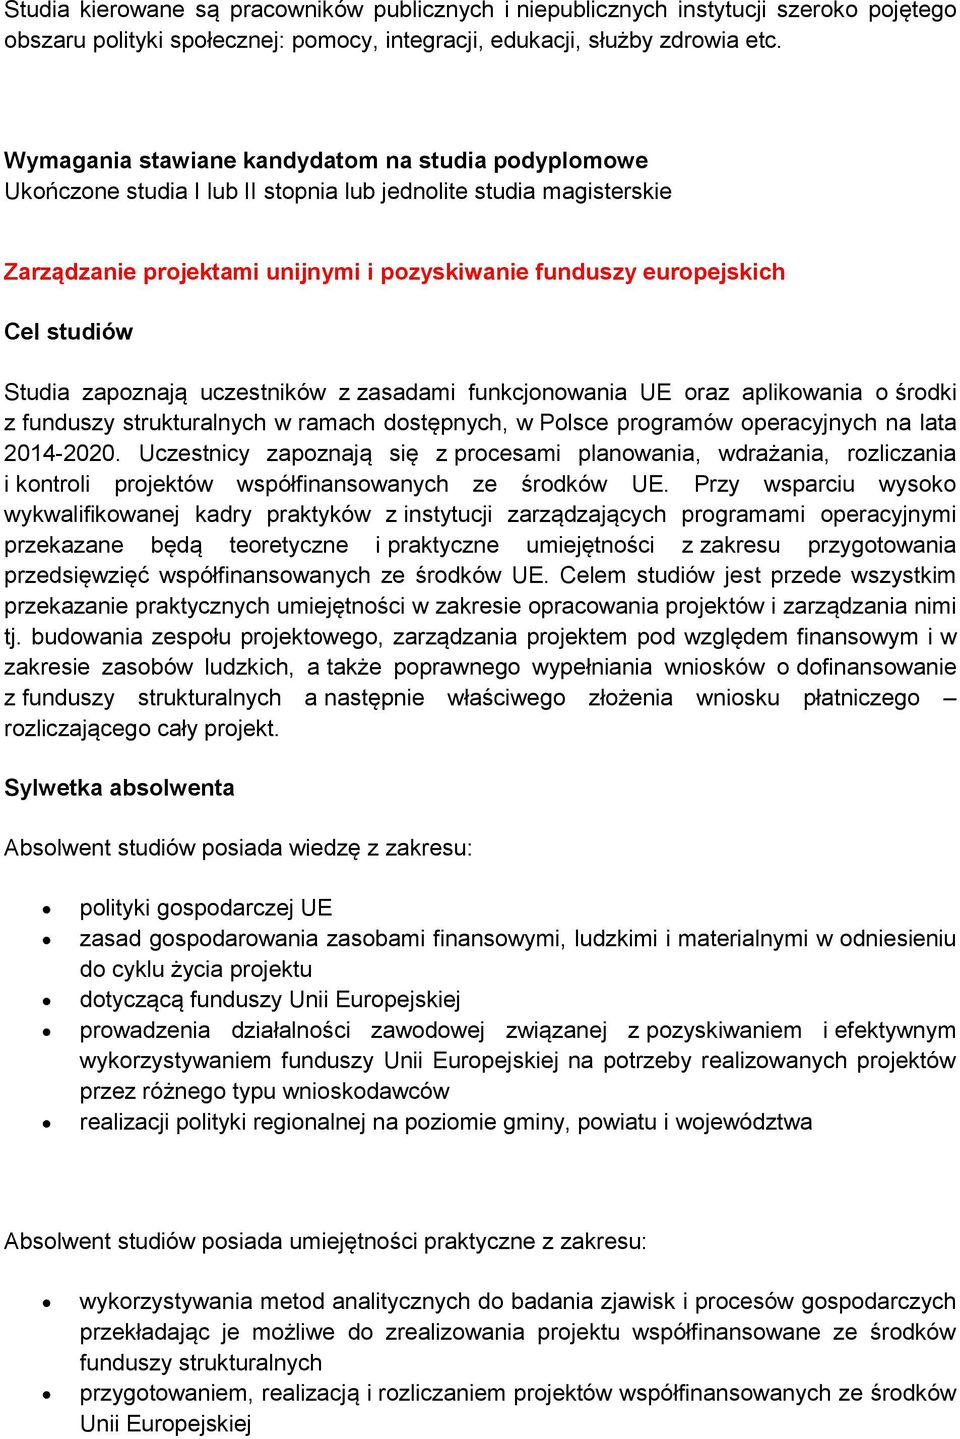 aplikowania o środki z funduszy strukturalnych w ramach dostępnych, w Polsce programów operacyjnych na lata 2014-2020.